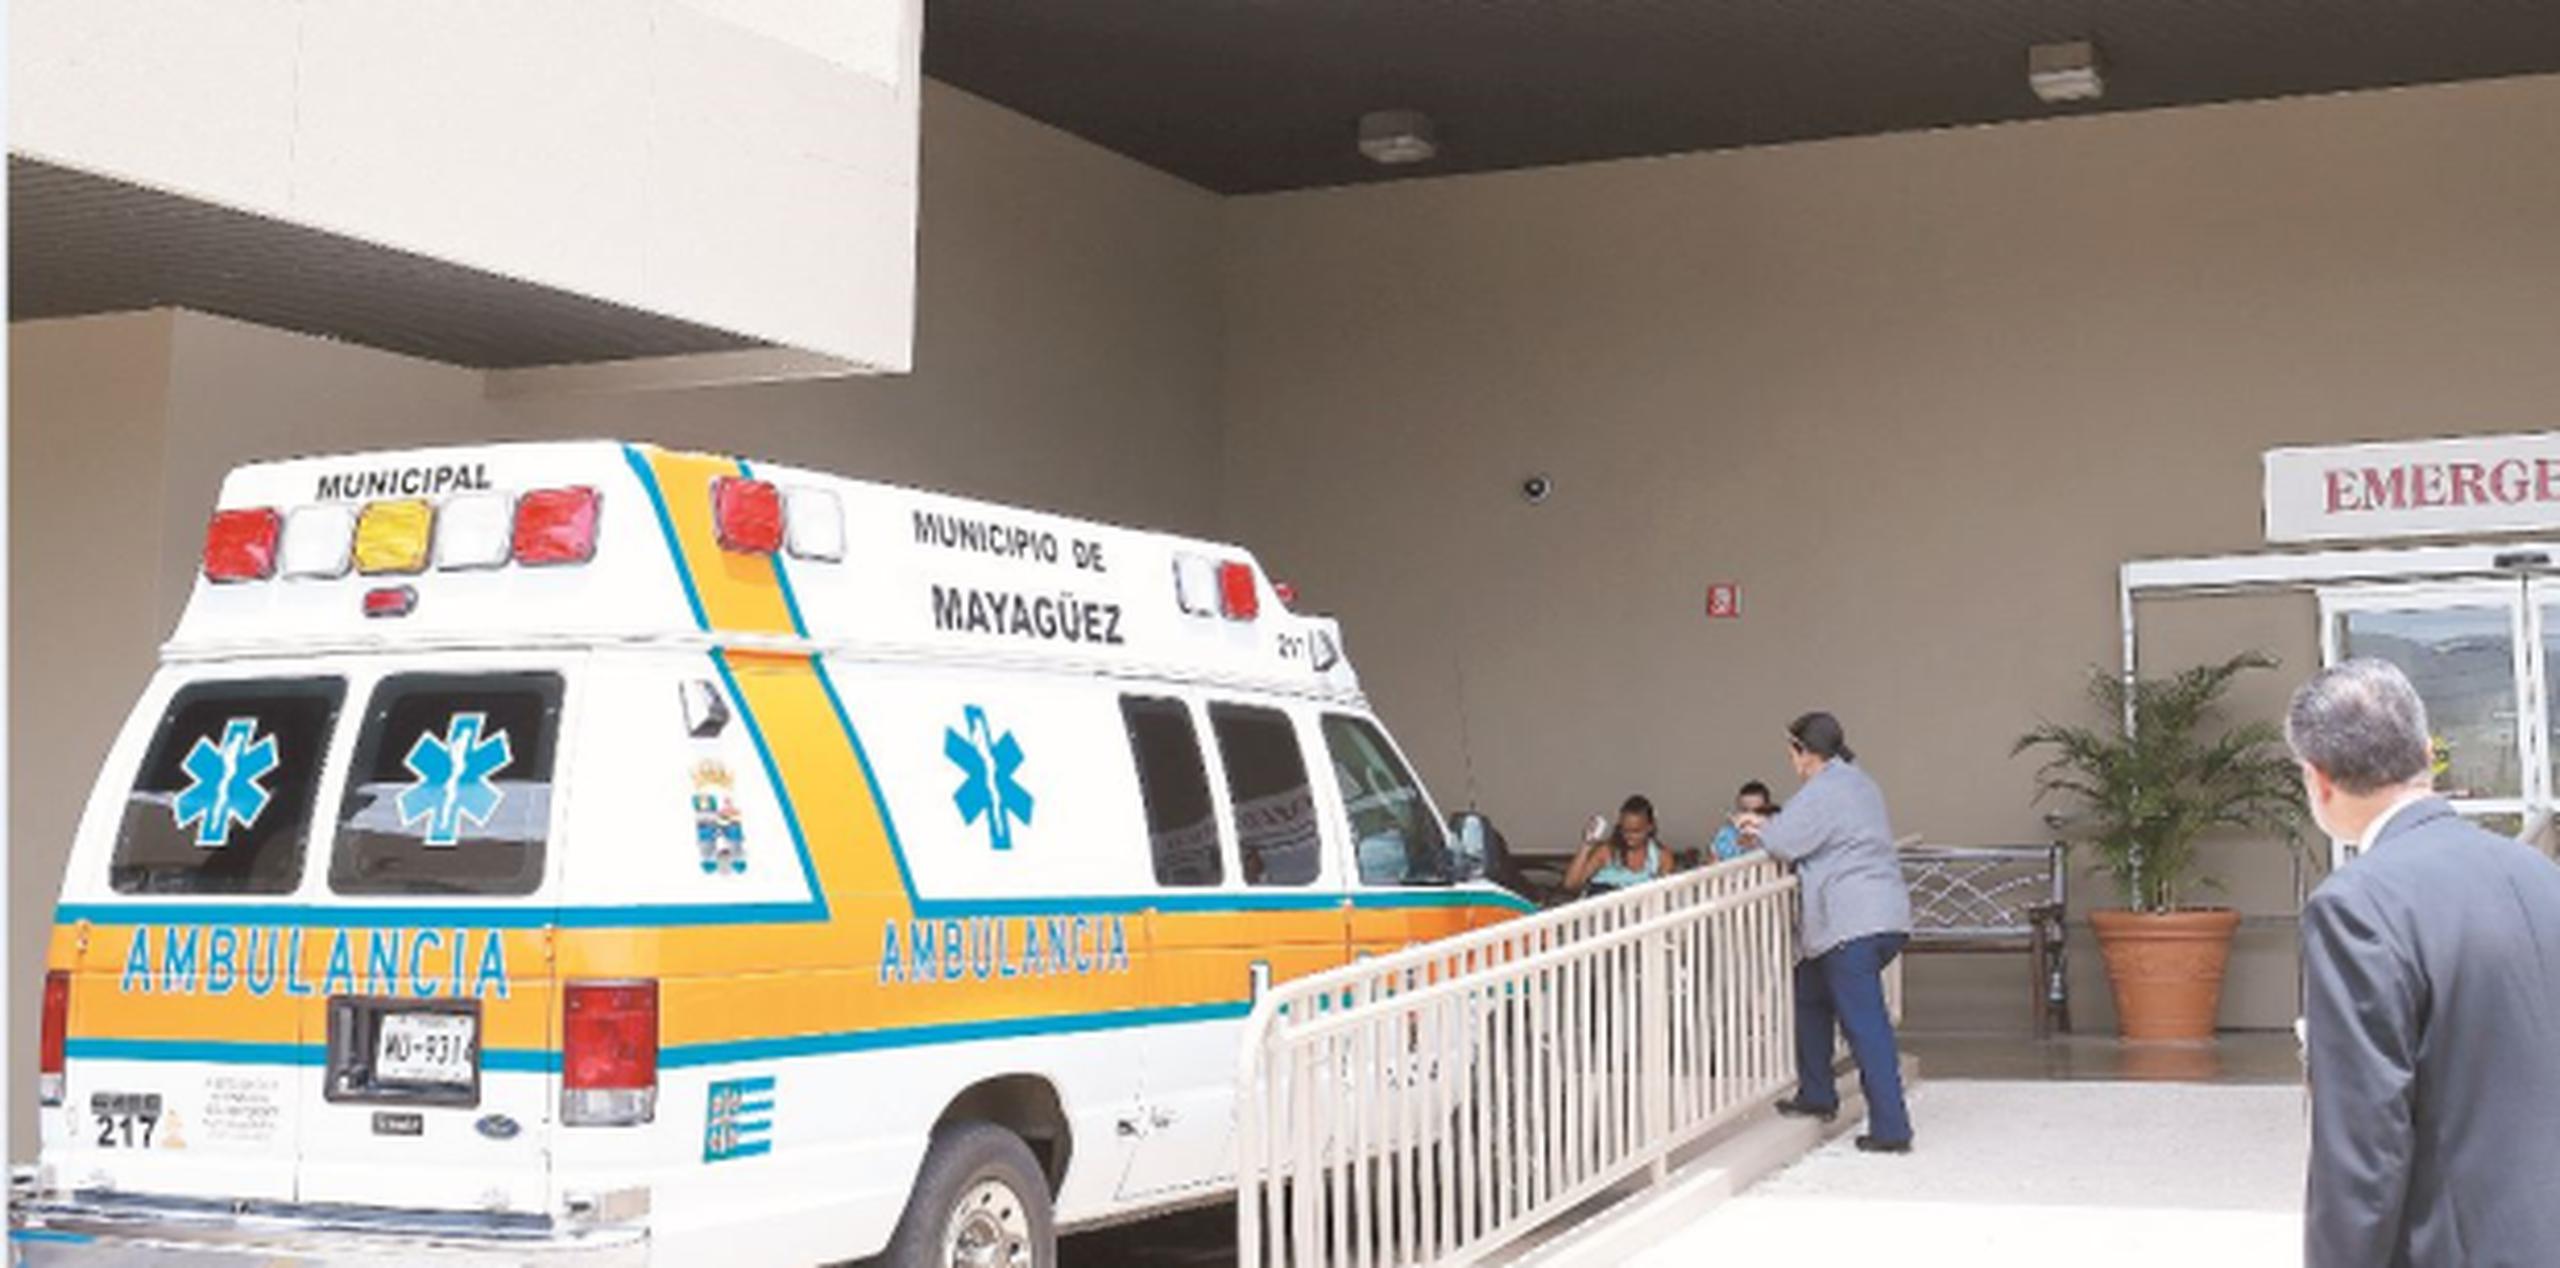 El primer ejecutivo mayagüezano negó que esa sea el plan con el Centro Médico de Mayagüez, que hoy opera gracias a una alianza púbico privada. (Archivo)